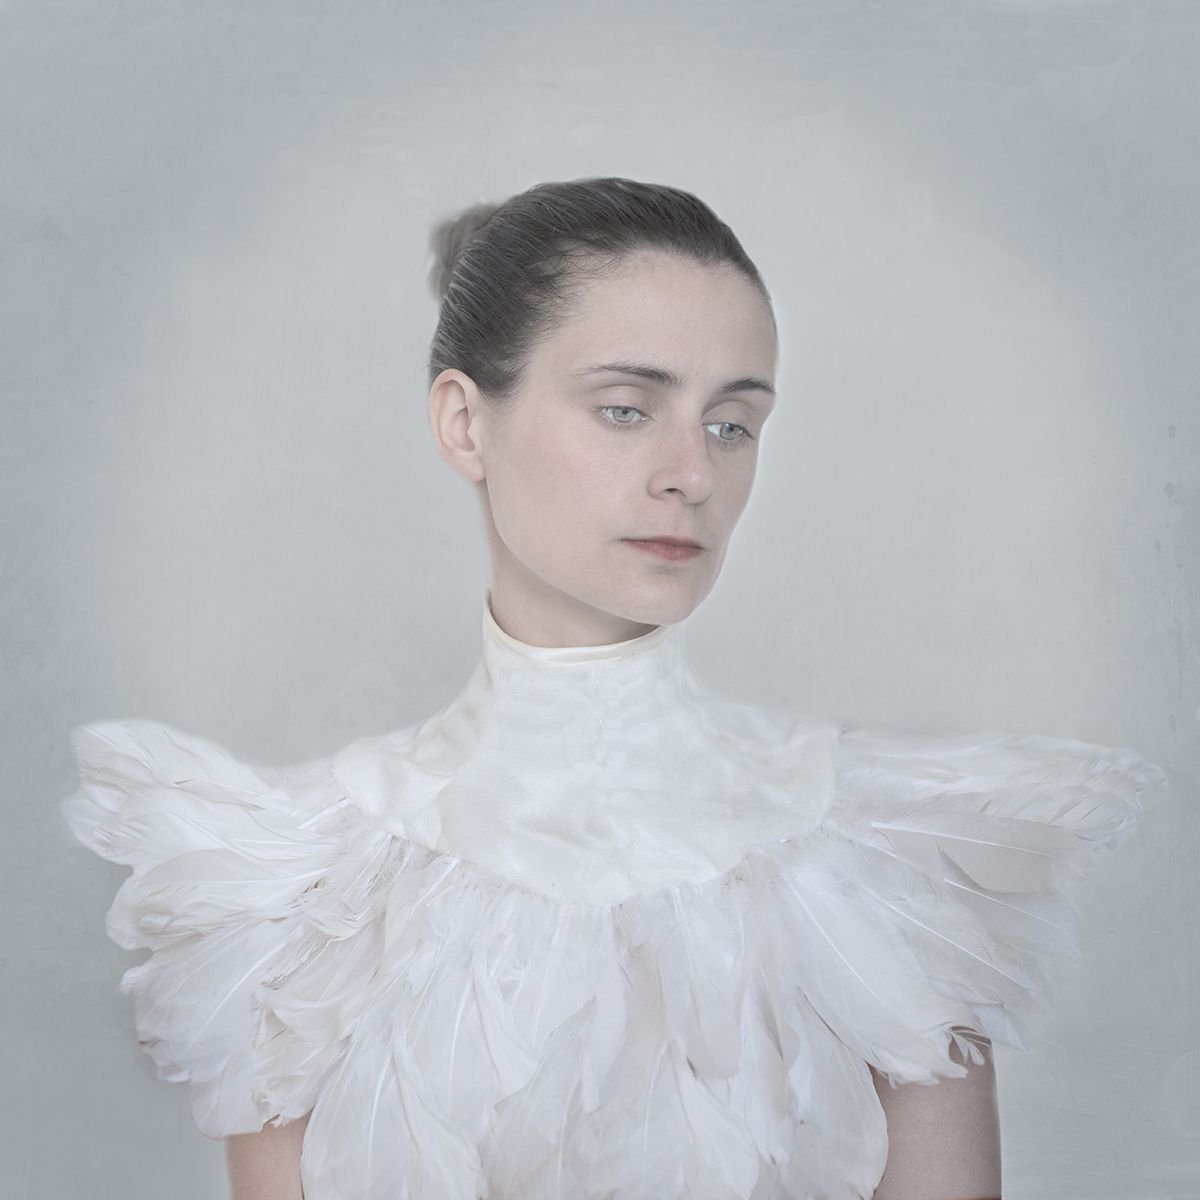 A Winter Bird by Amelie Berton